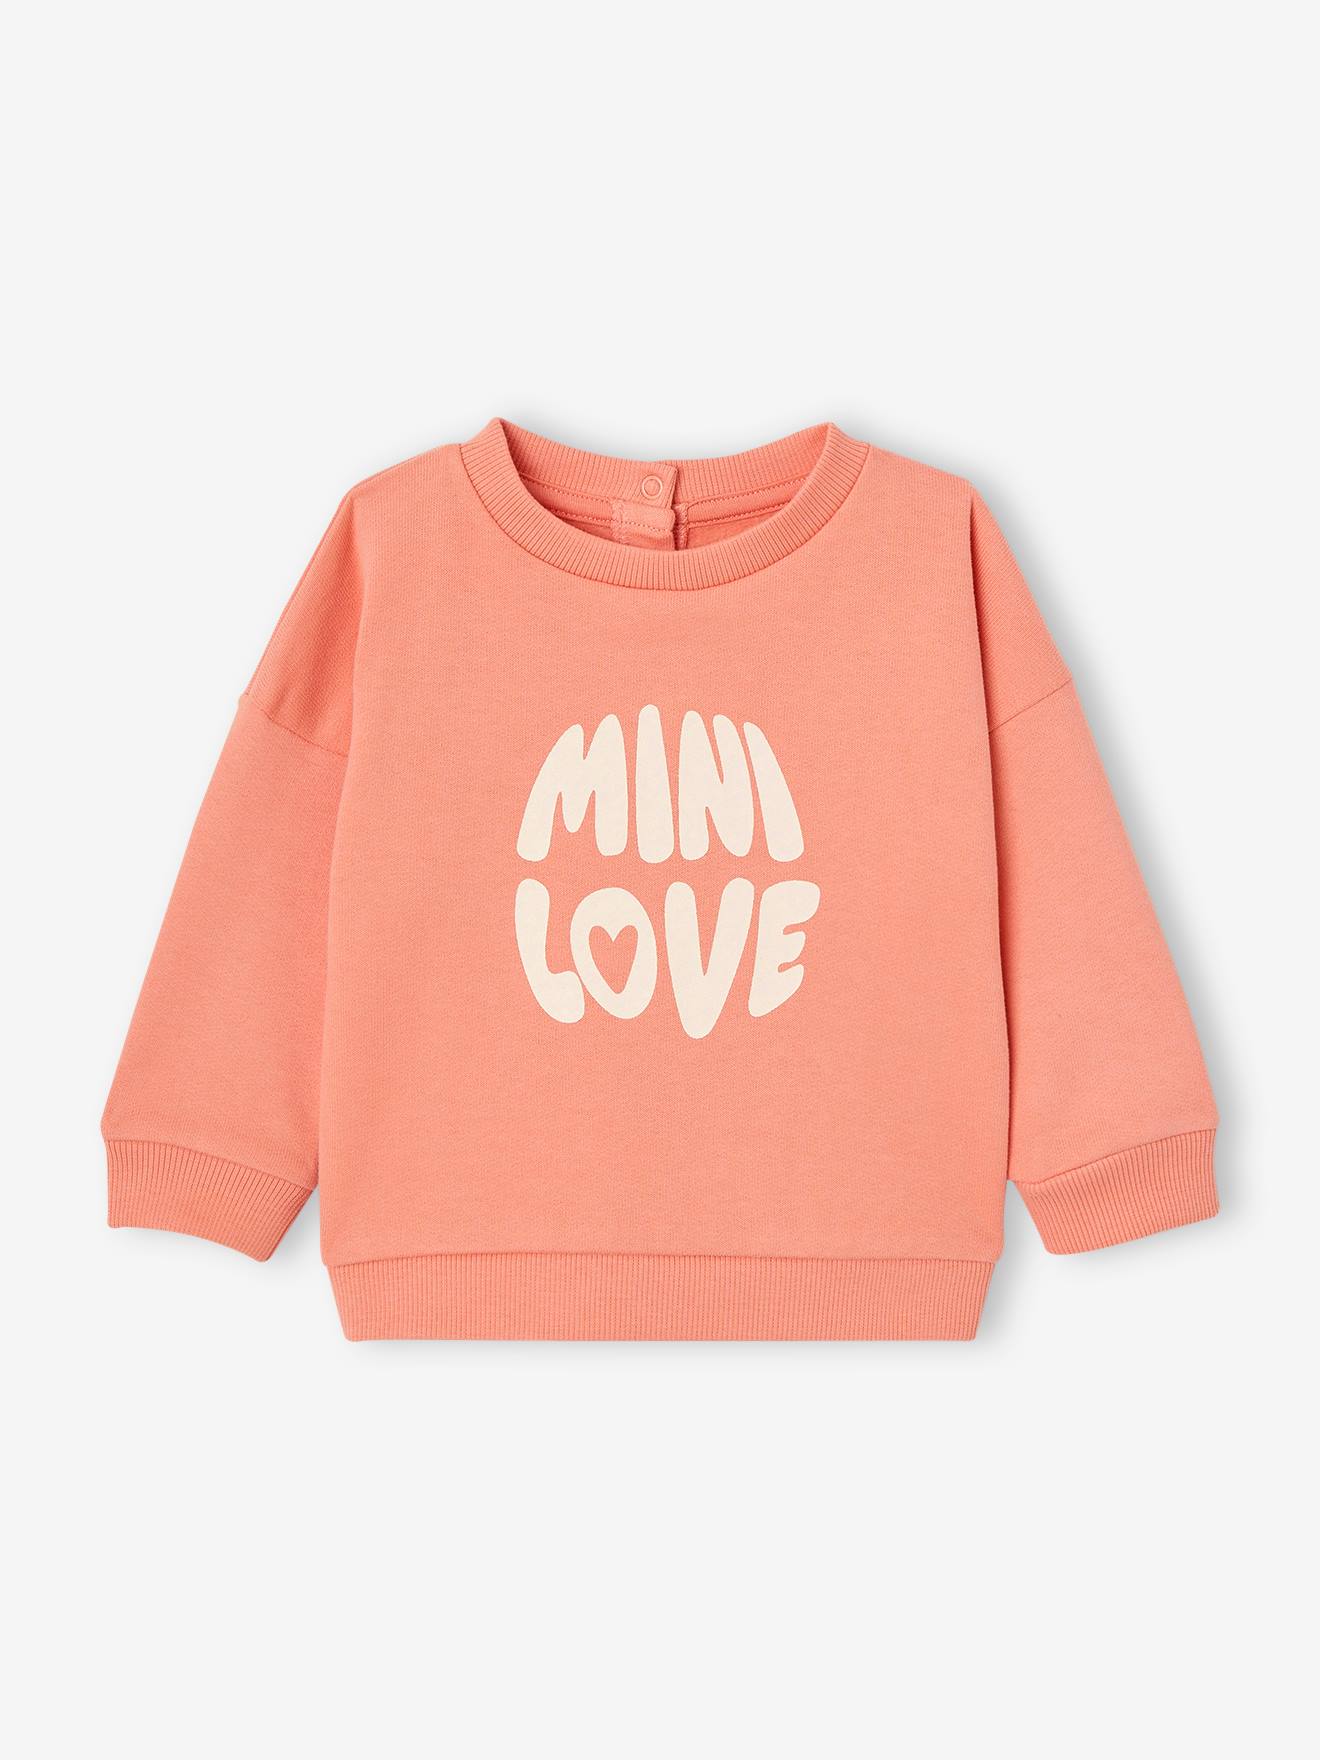 Basics babysweatshirt met drukknopen op de rug koraal